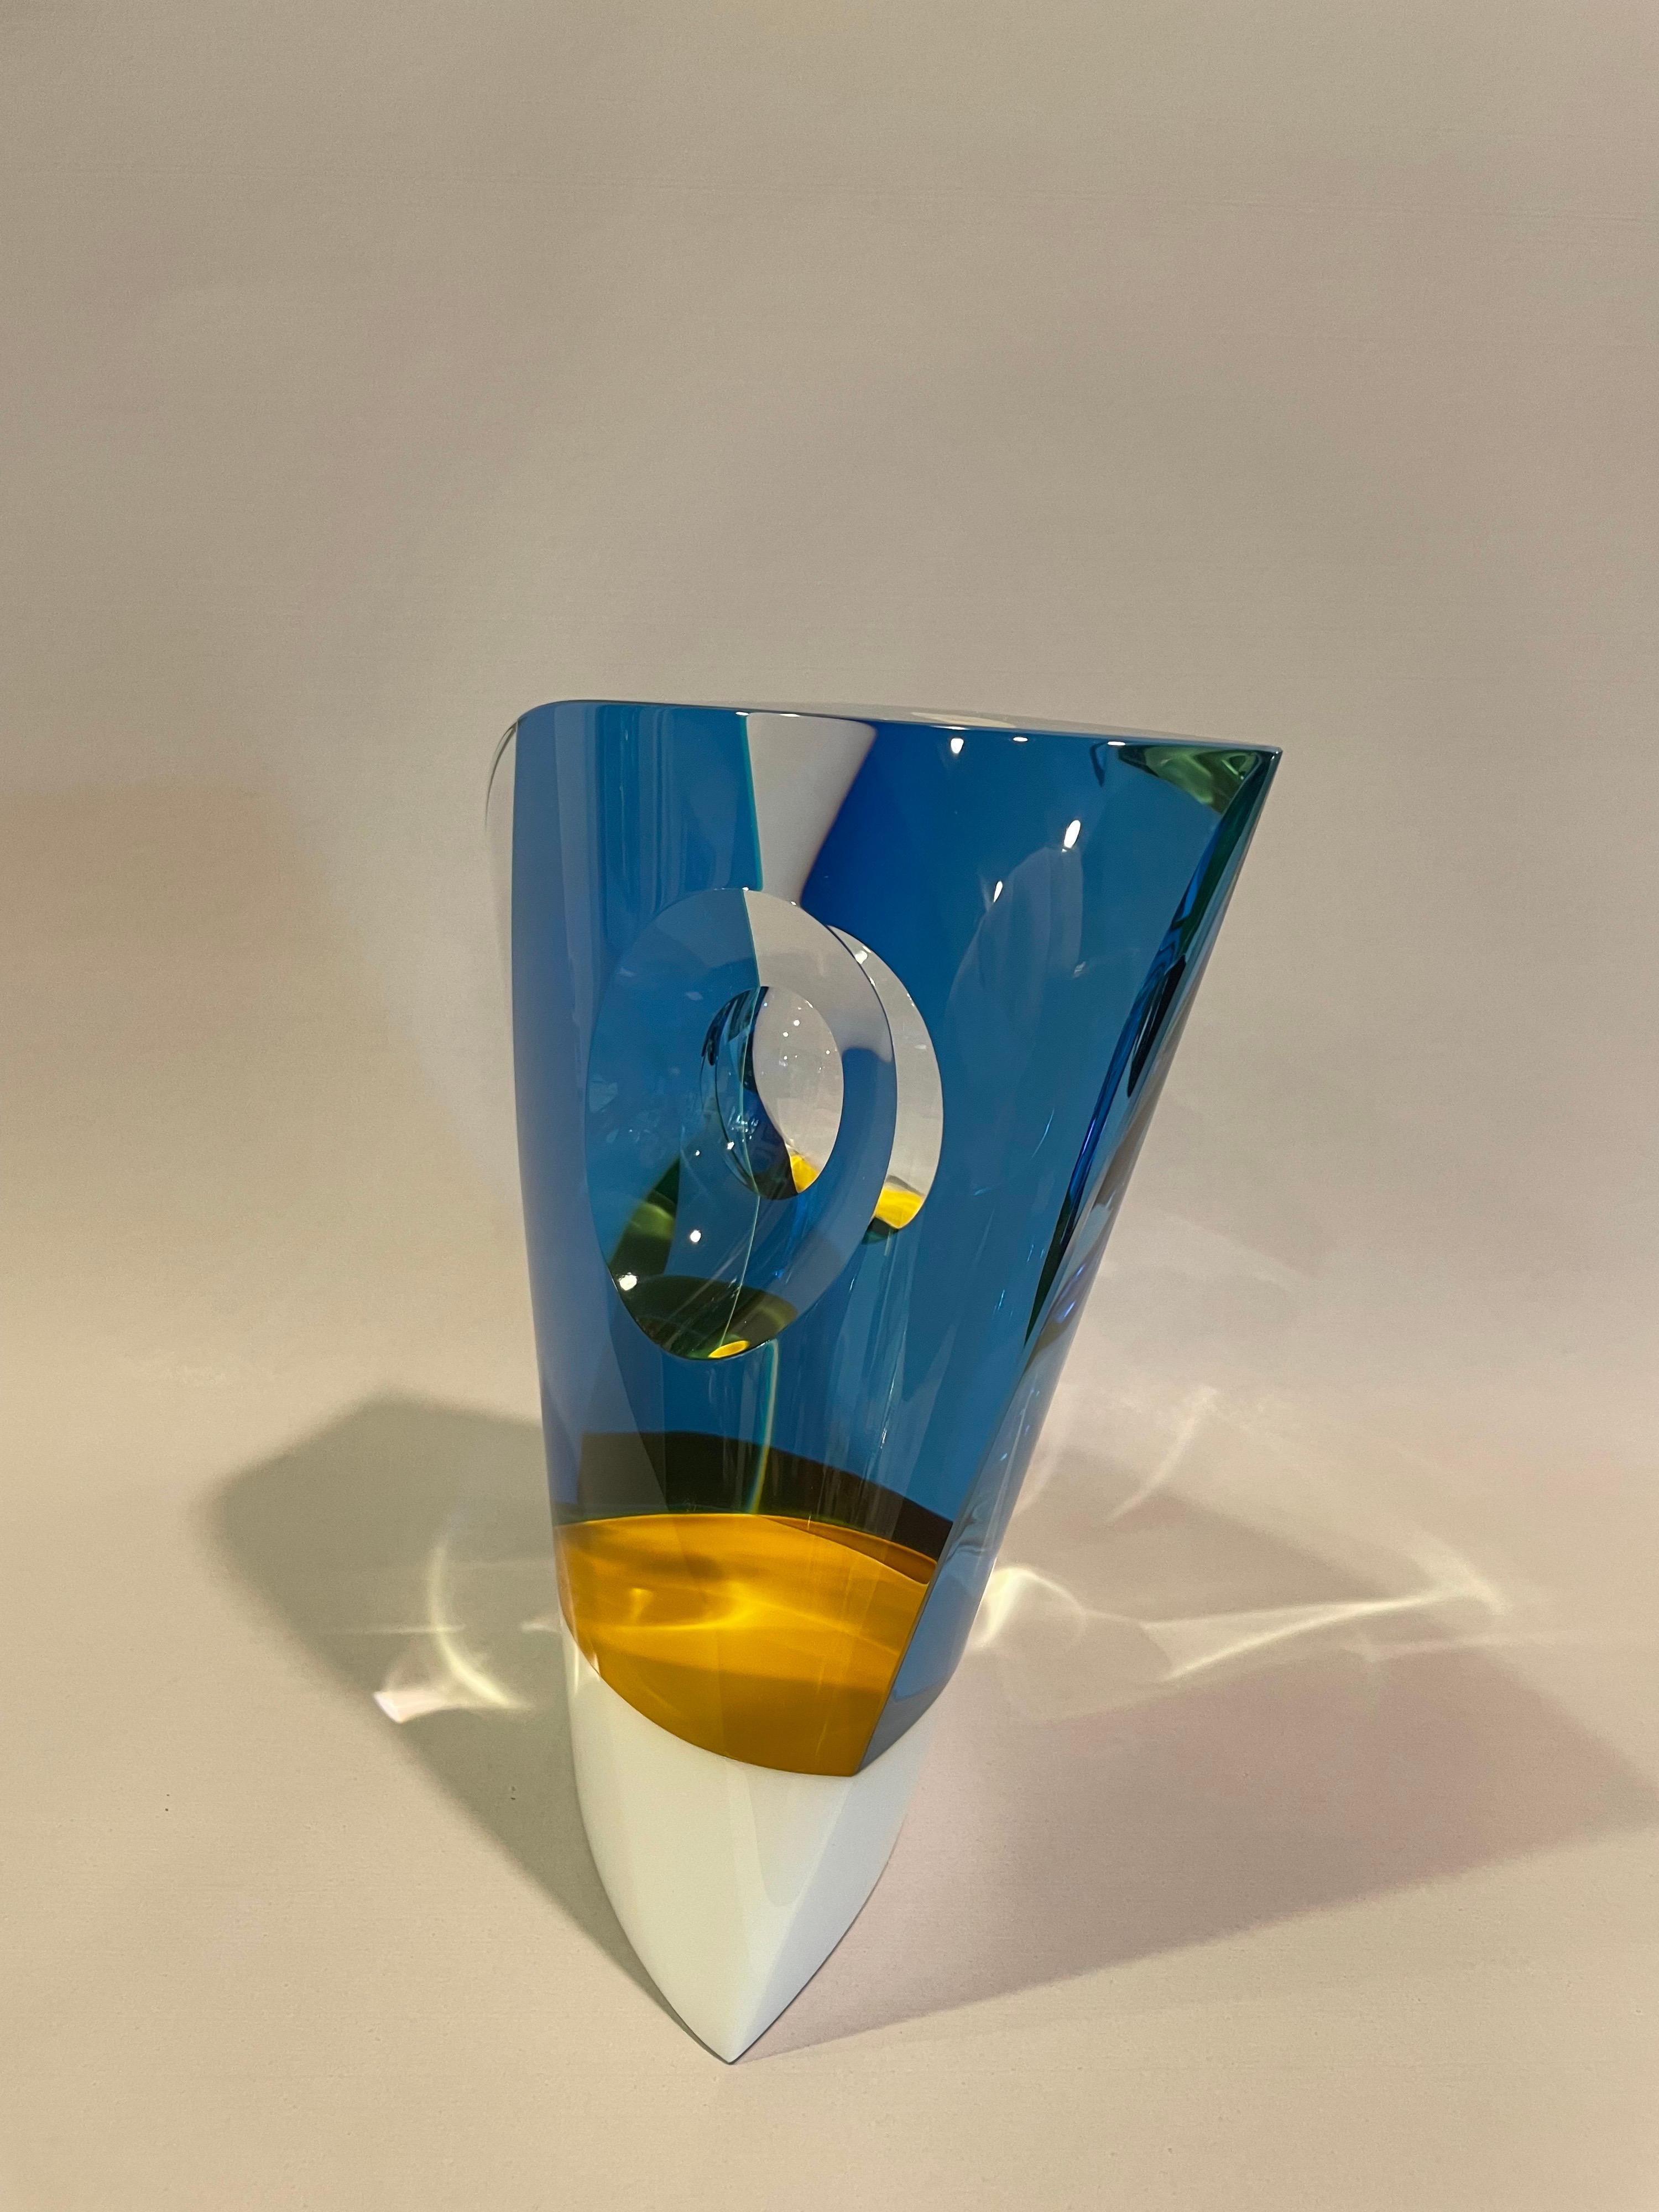 Artistic glass sculpture 